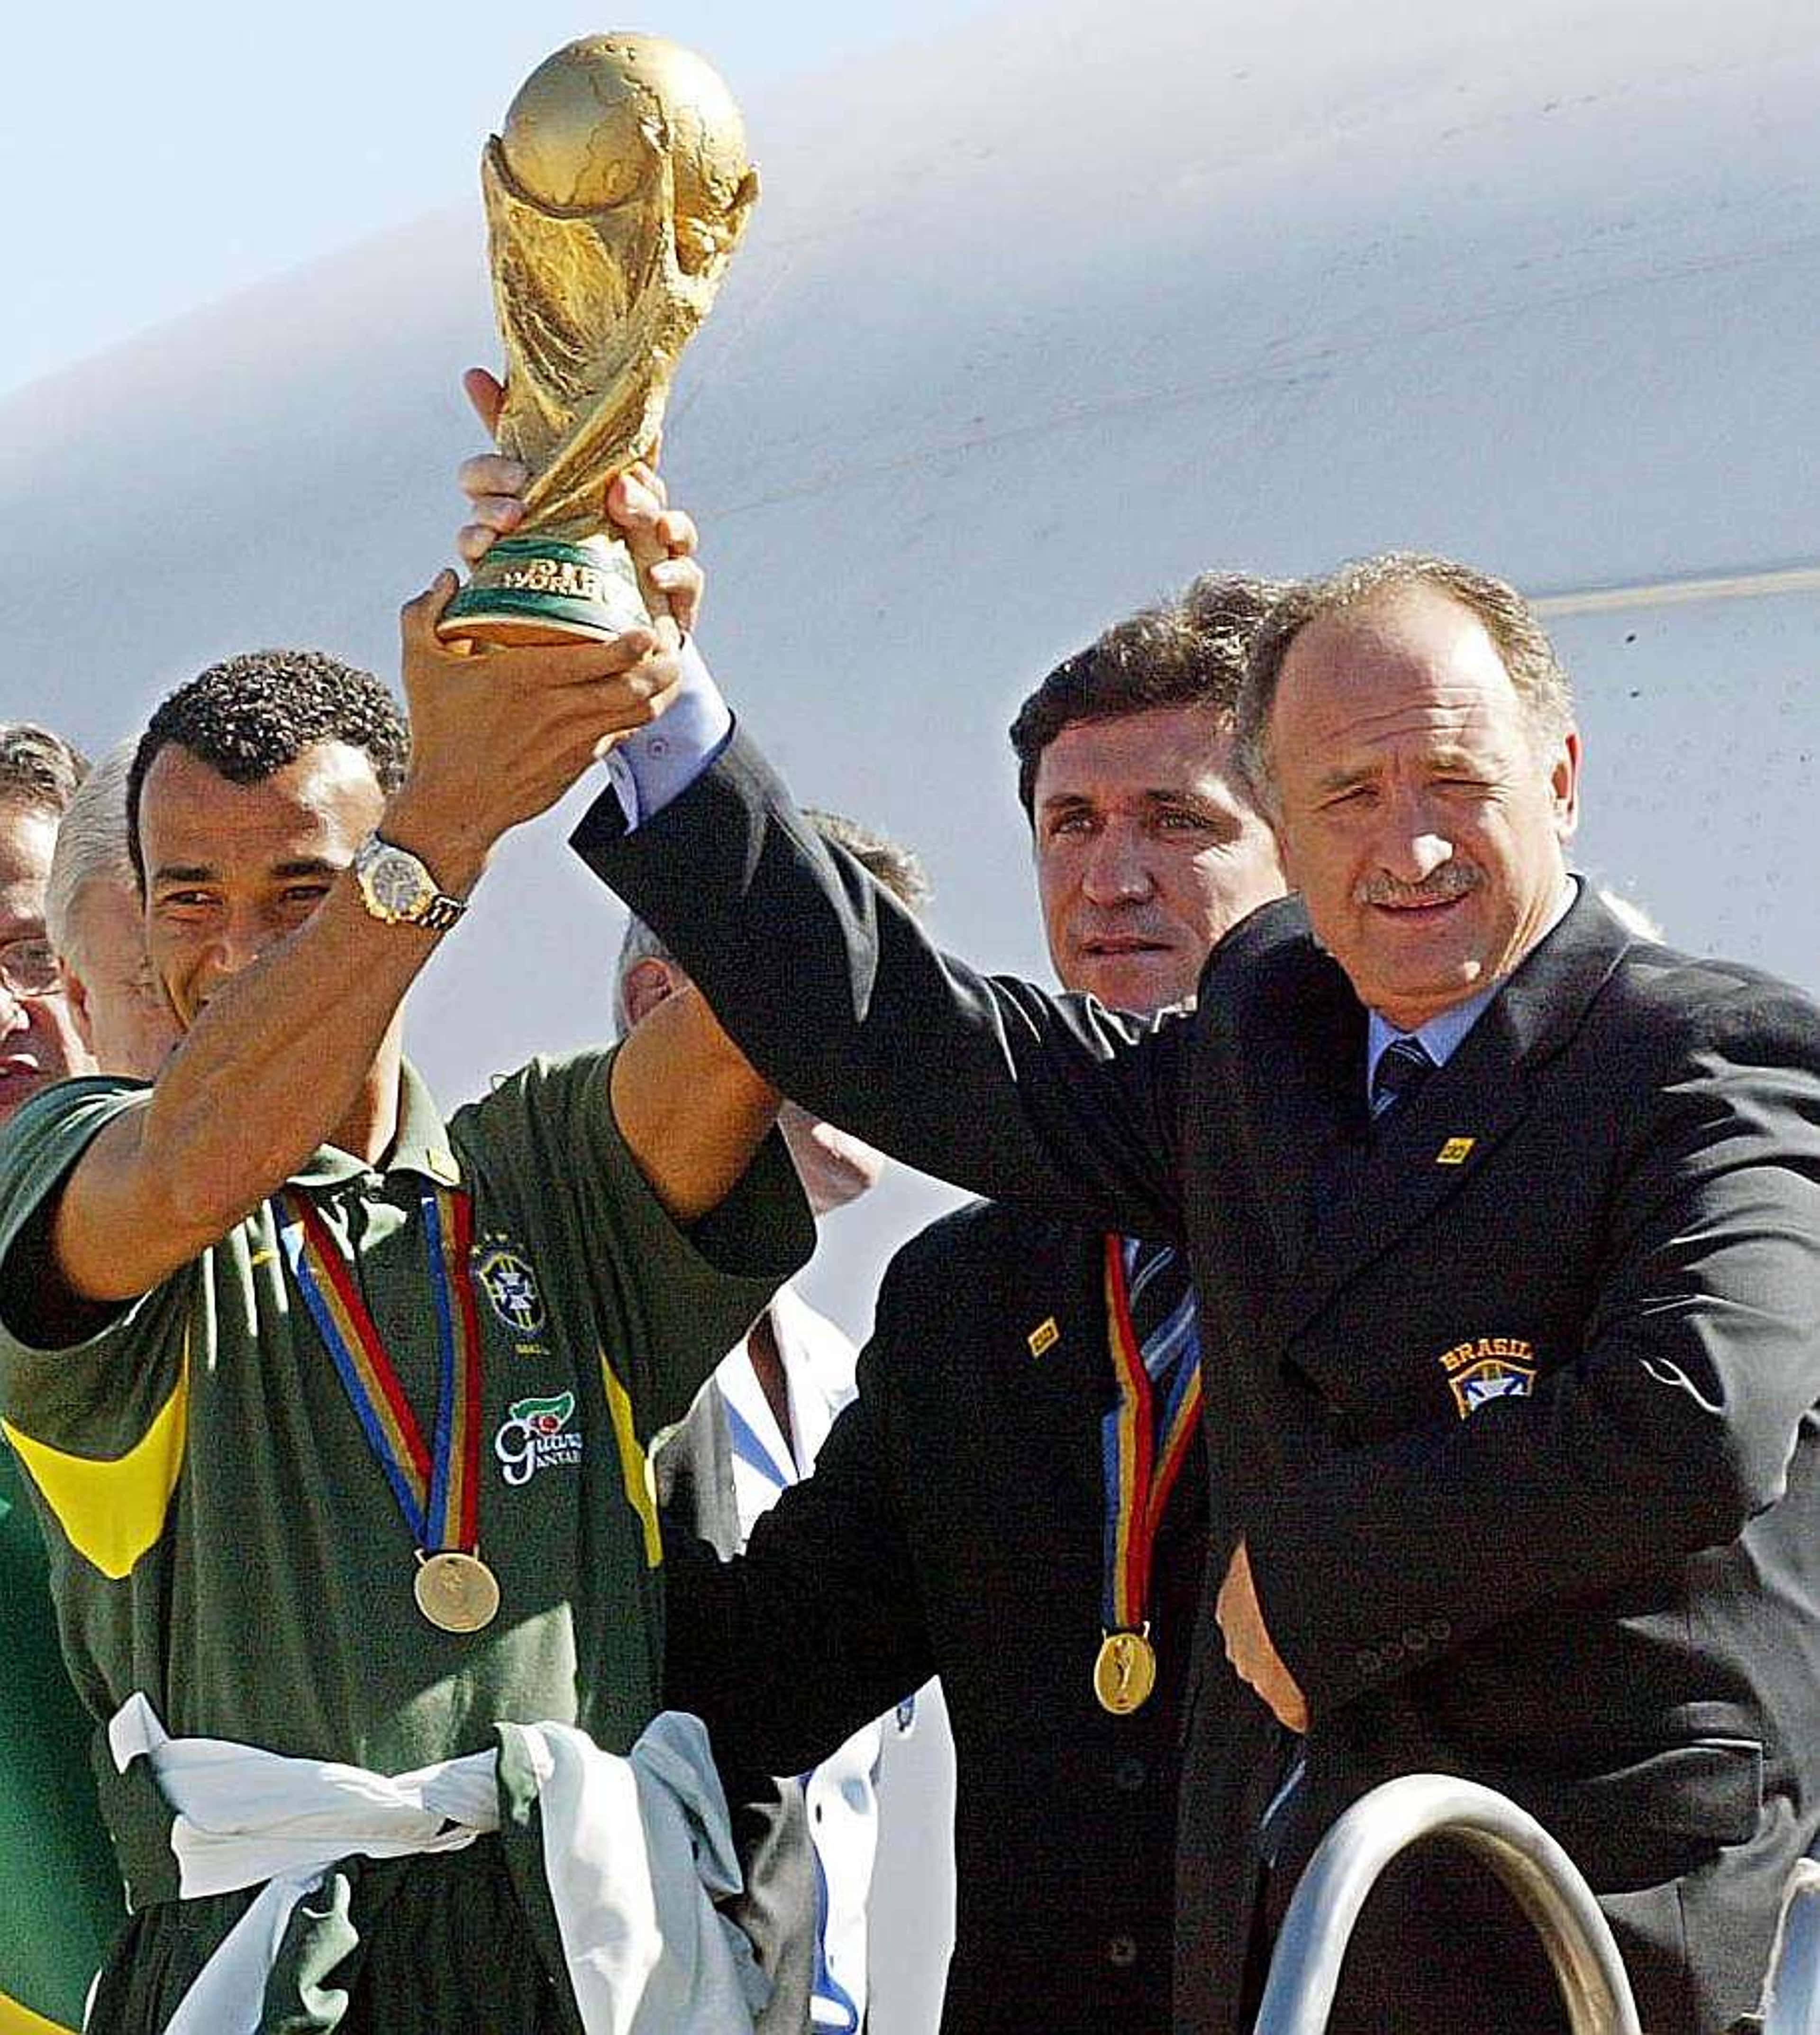 Último título mundial do Brasil, penta completa 16 anos